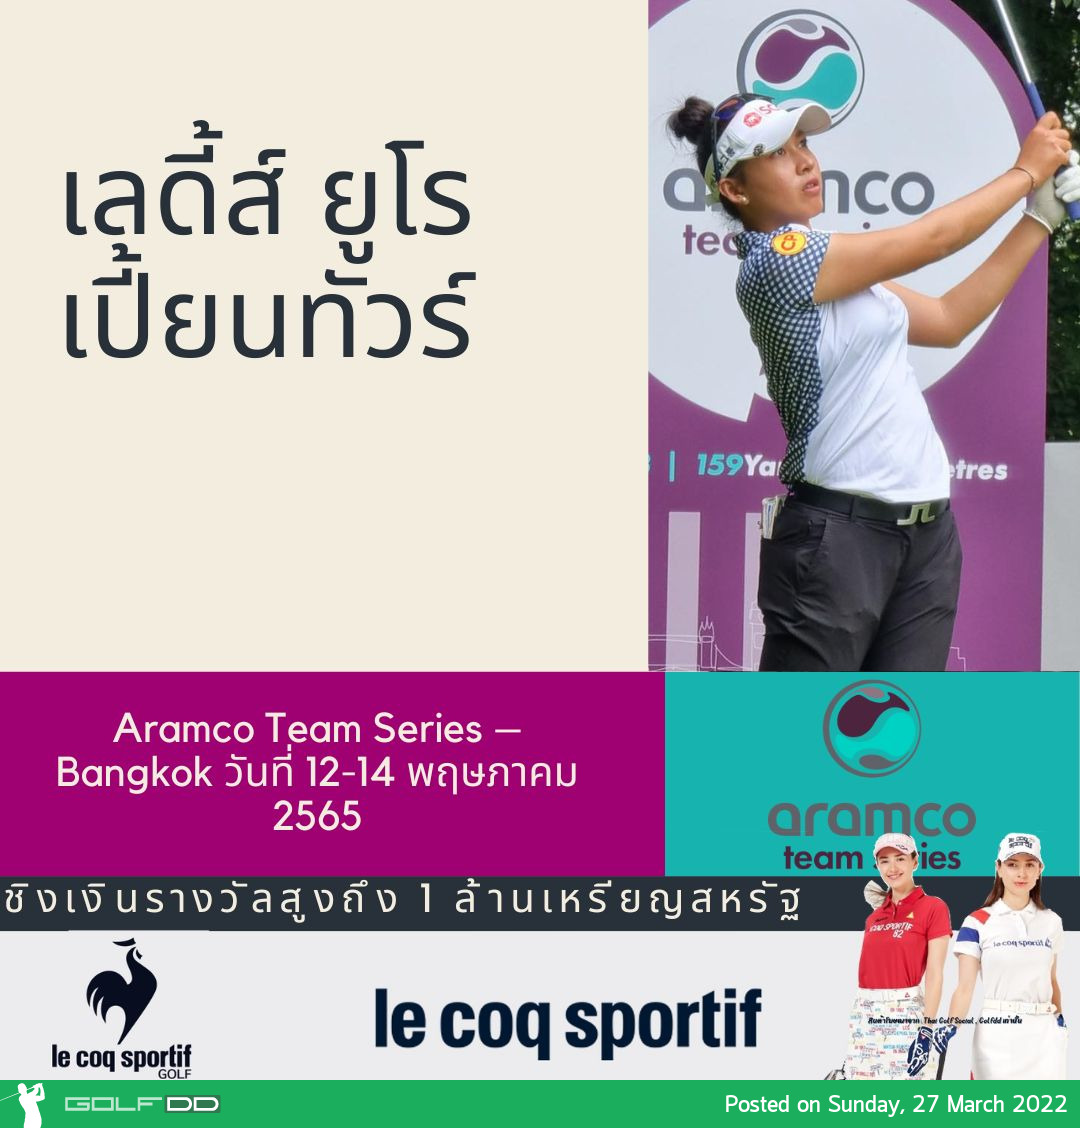 เลดี้ส์ ยูโรเปี้ยนทัวร์ โปรแกรมการแข่งขัน ล่าสุด มีรายการ Aramco Team Series – Bangkok วันที่ 12-14 พฤษภาคม 2565 